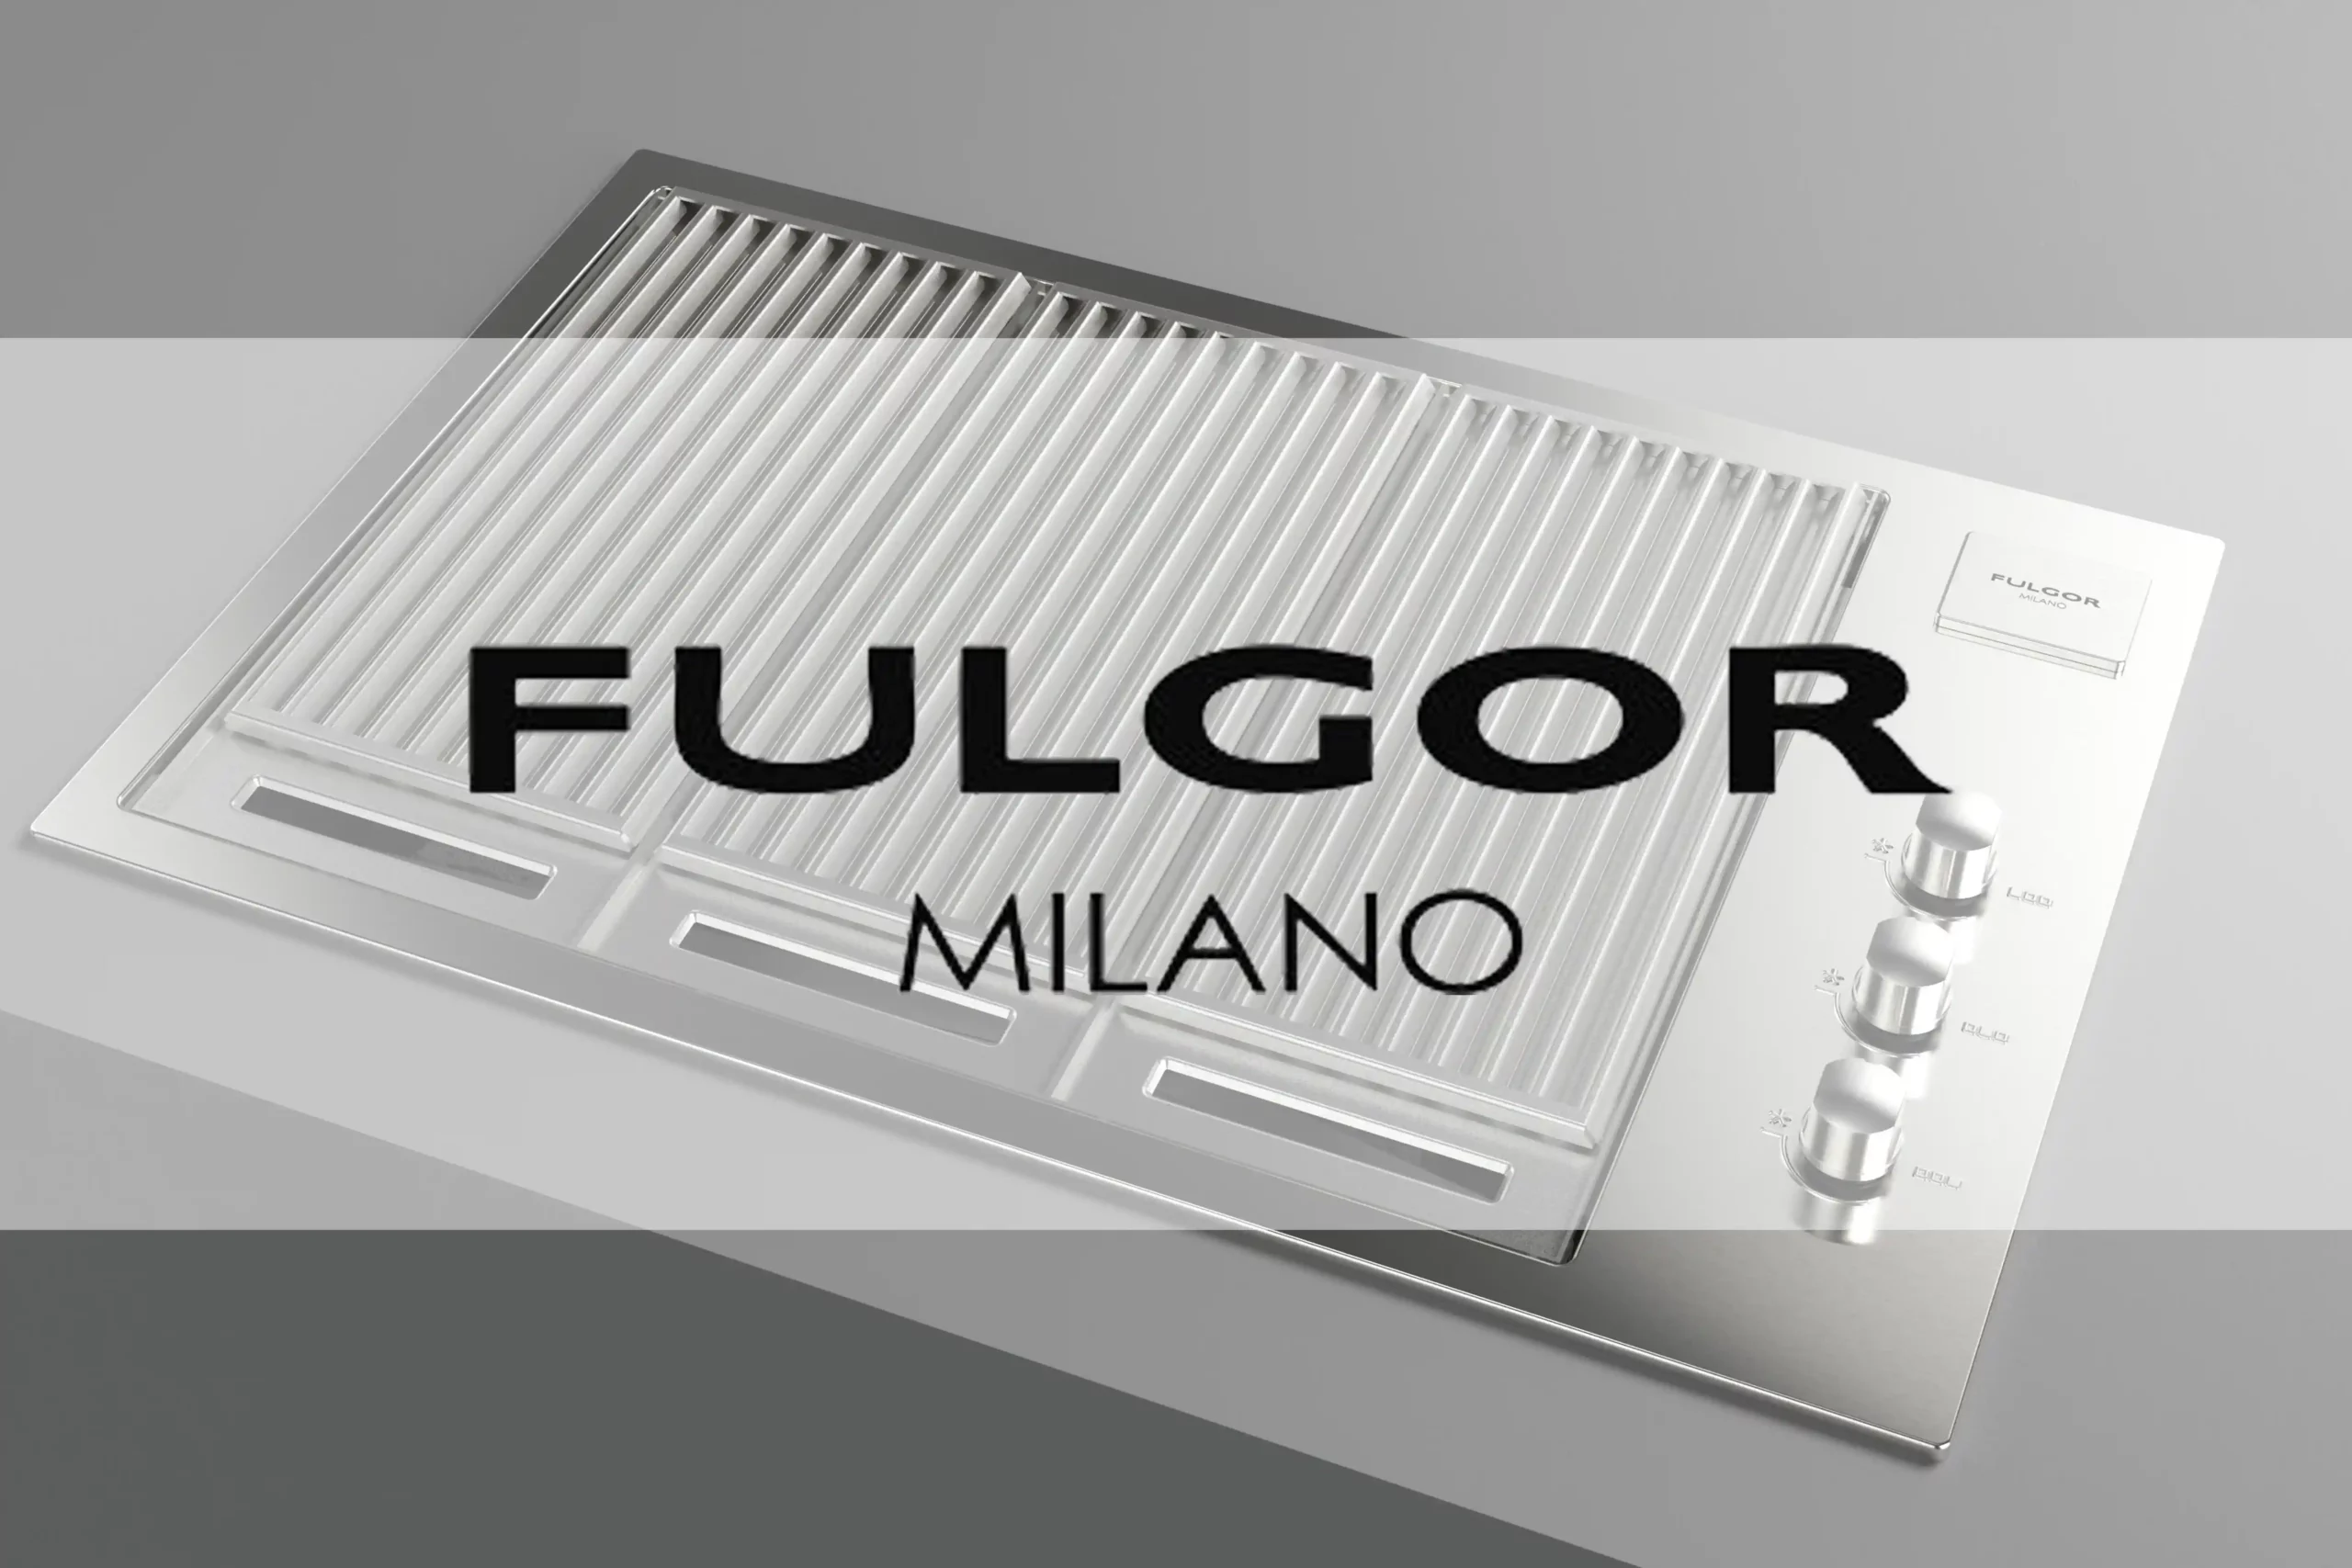 Fulgor Milano Einbaugeräte Luxus aus Italien Steelraum Lifestyle Michael Hofmann Hallstadt Bamberg Würzburg Michael Schneider BBQ Fachhändler